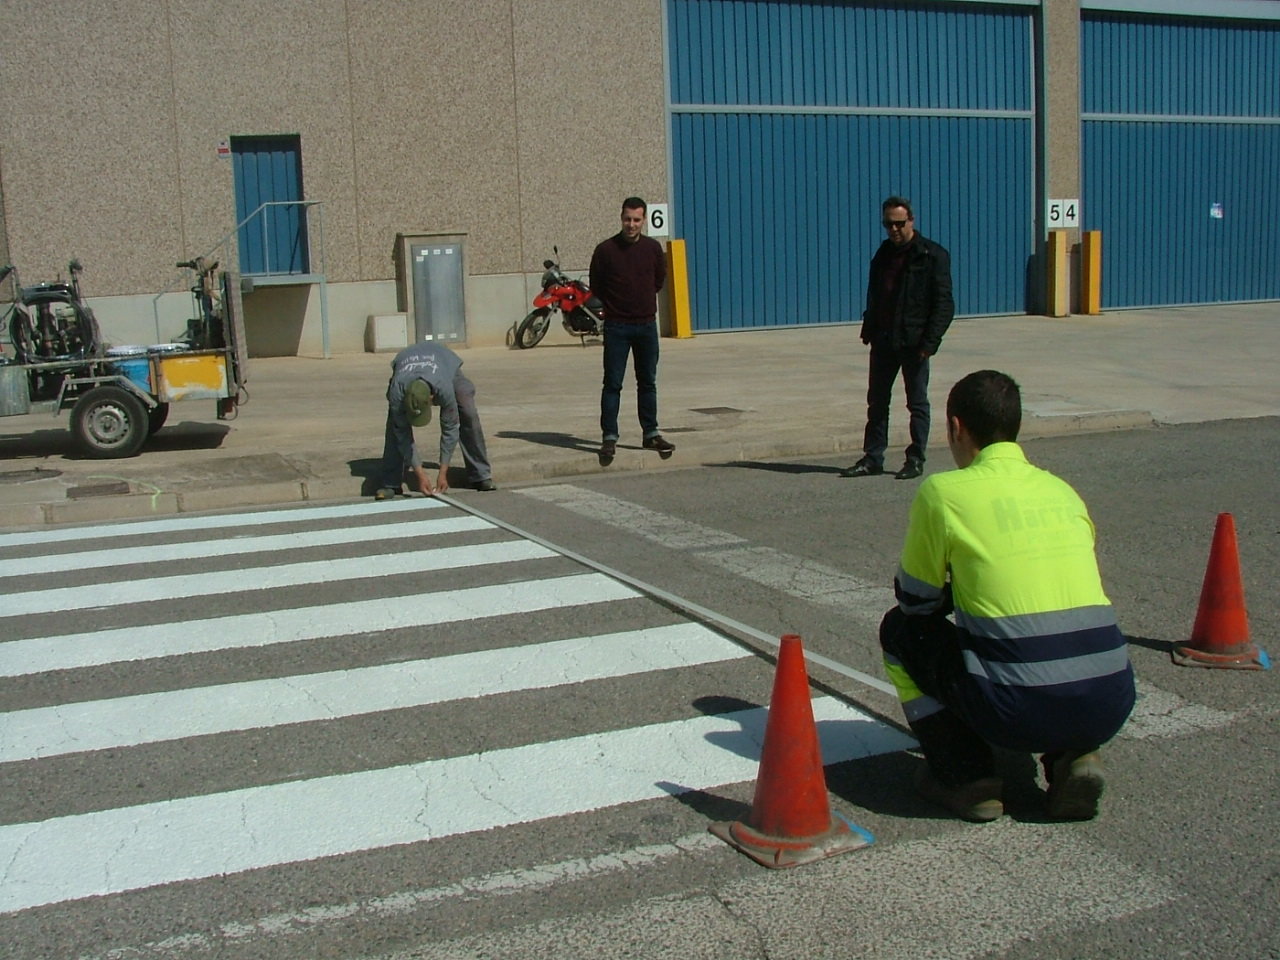 L'Ajuntament repinta els passos de vianants i instal·la senyals noves al polígon industrial